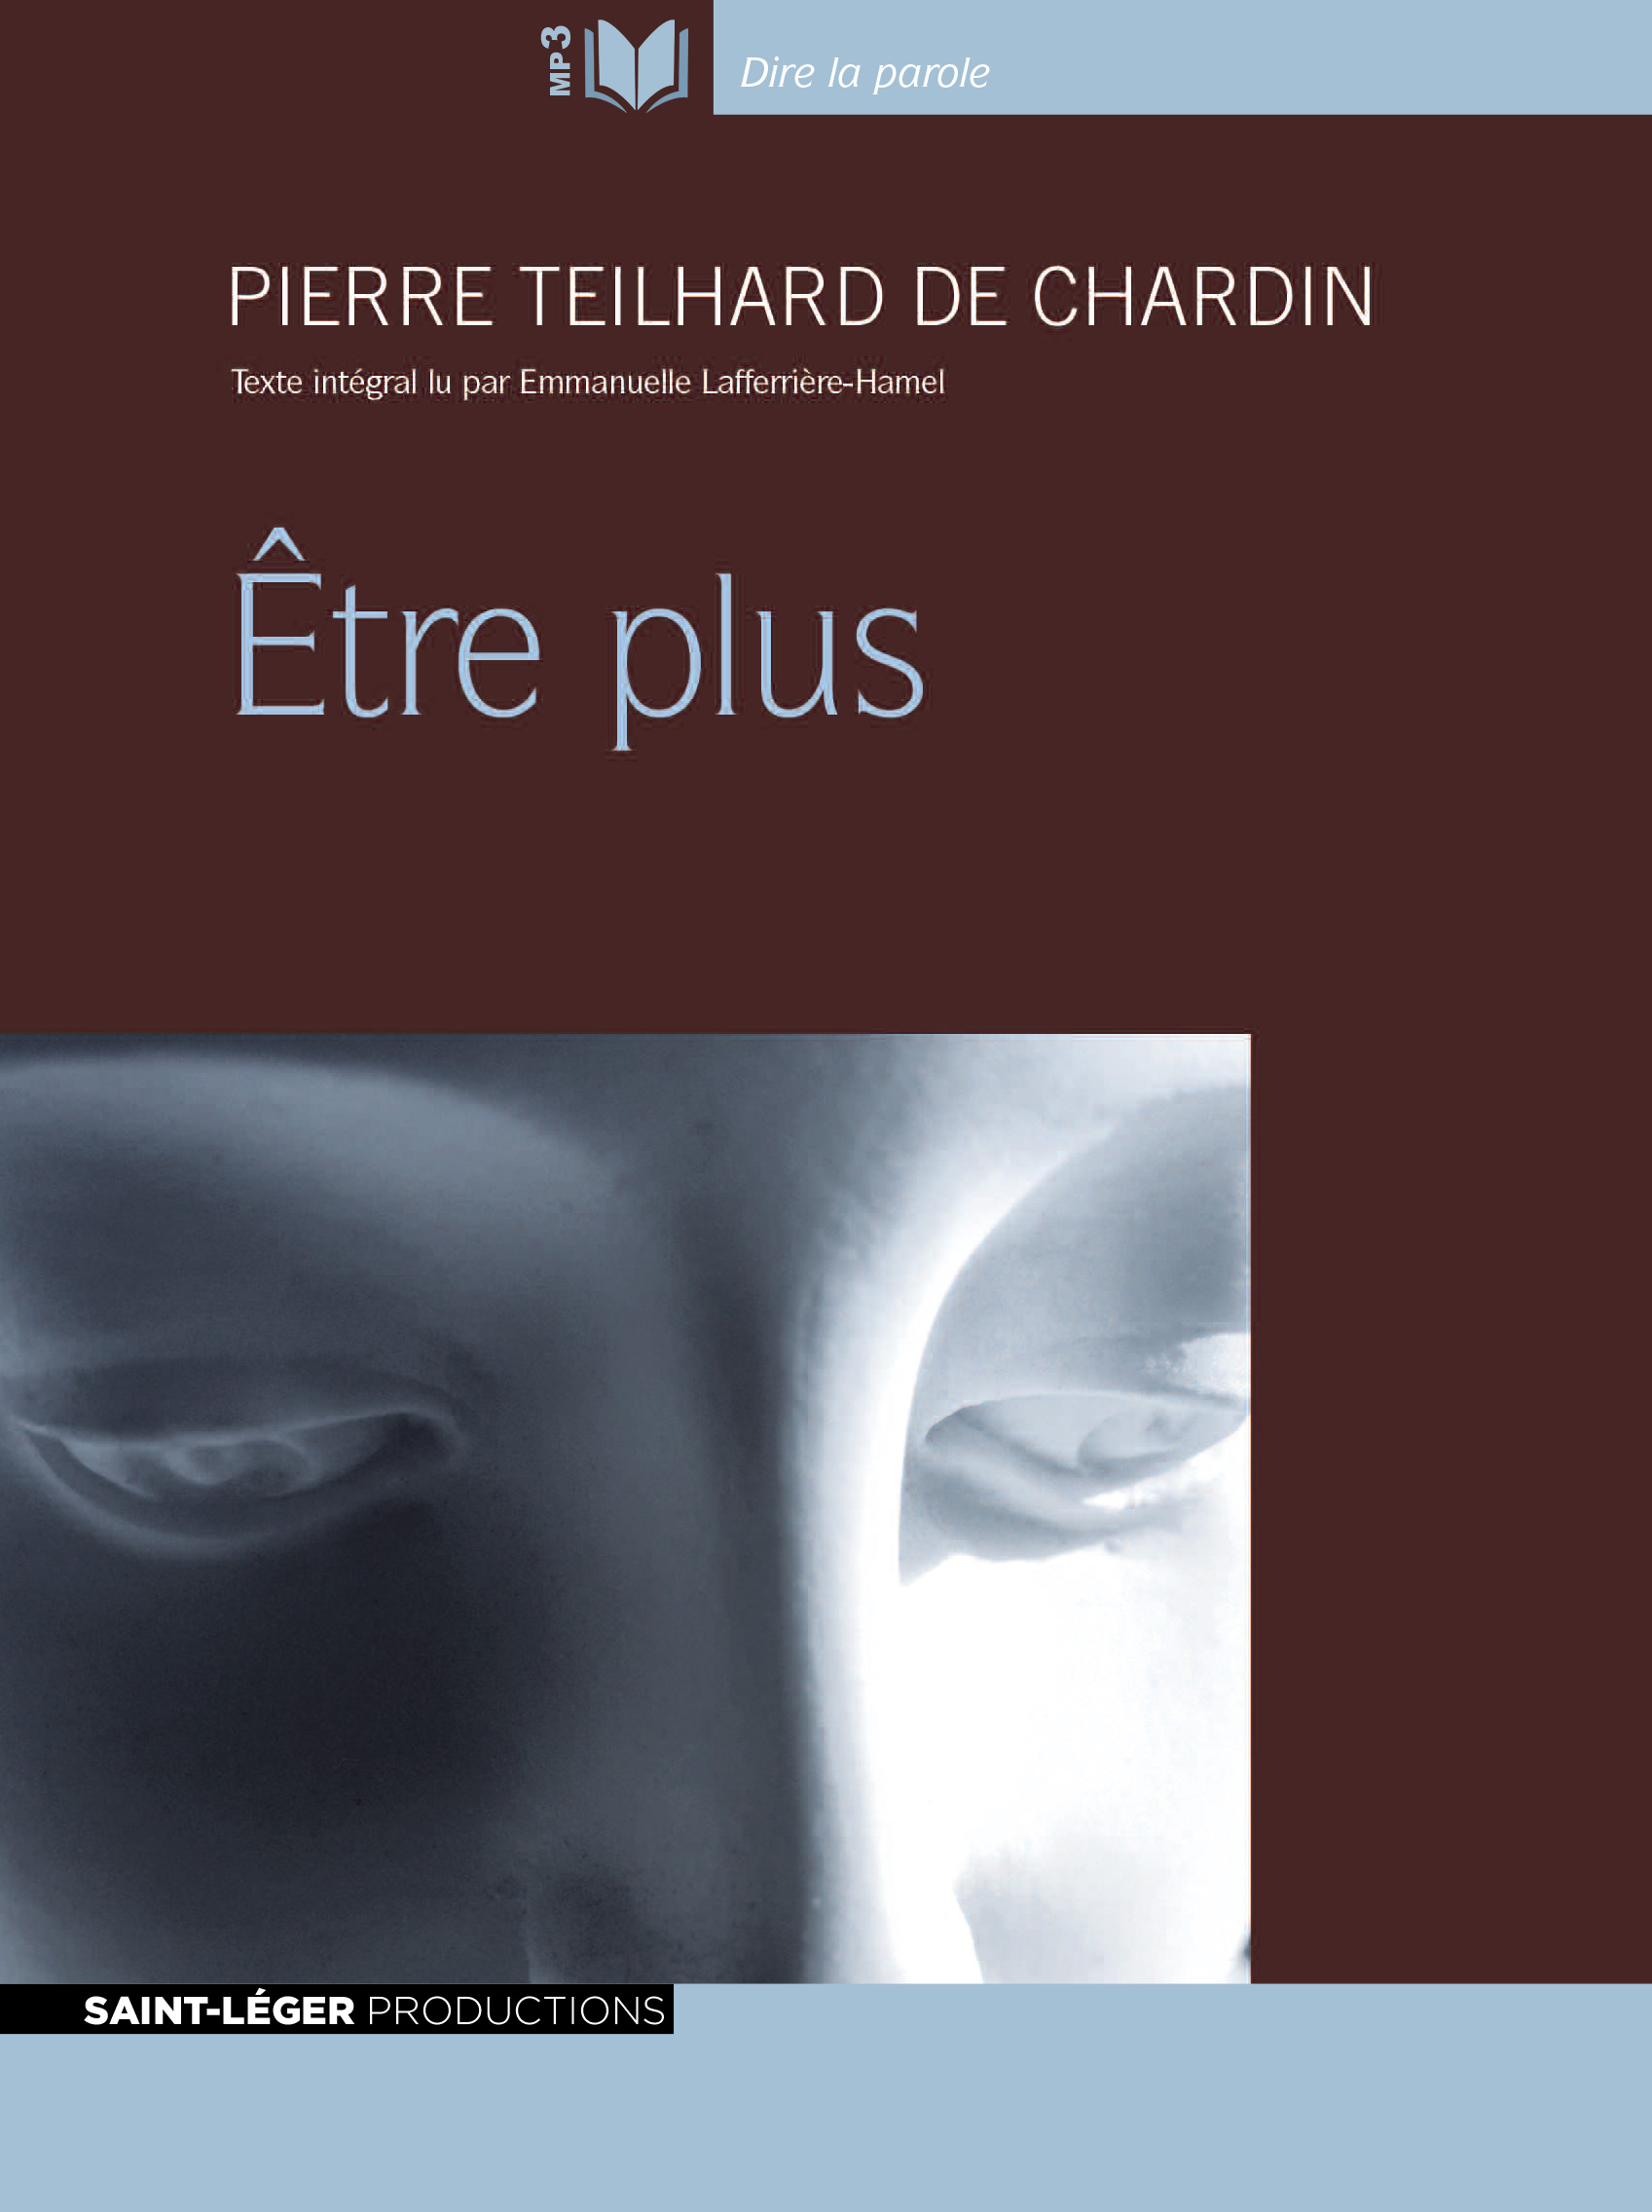 Teilhard de Chardin, être plus, audiolivre